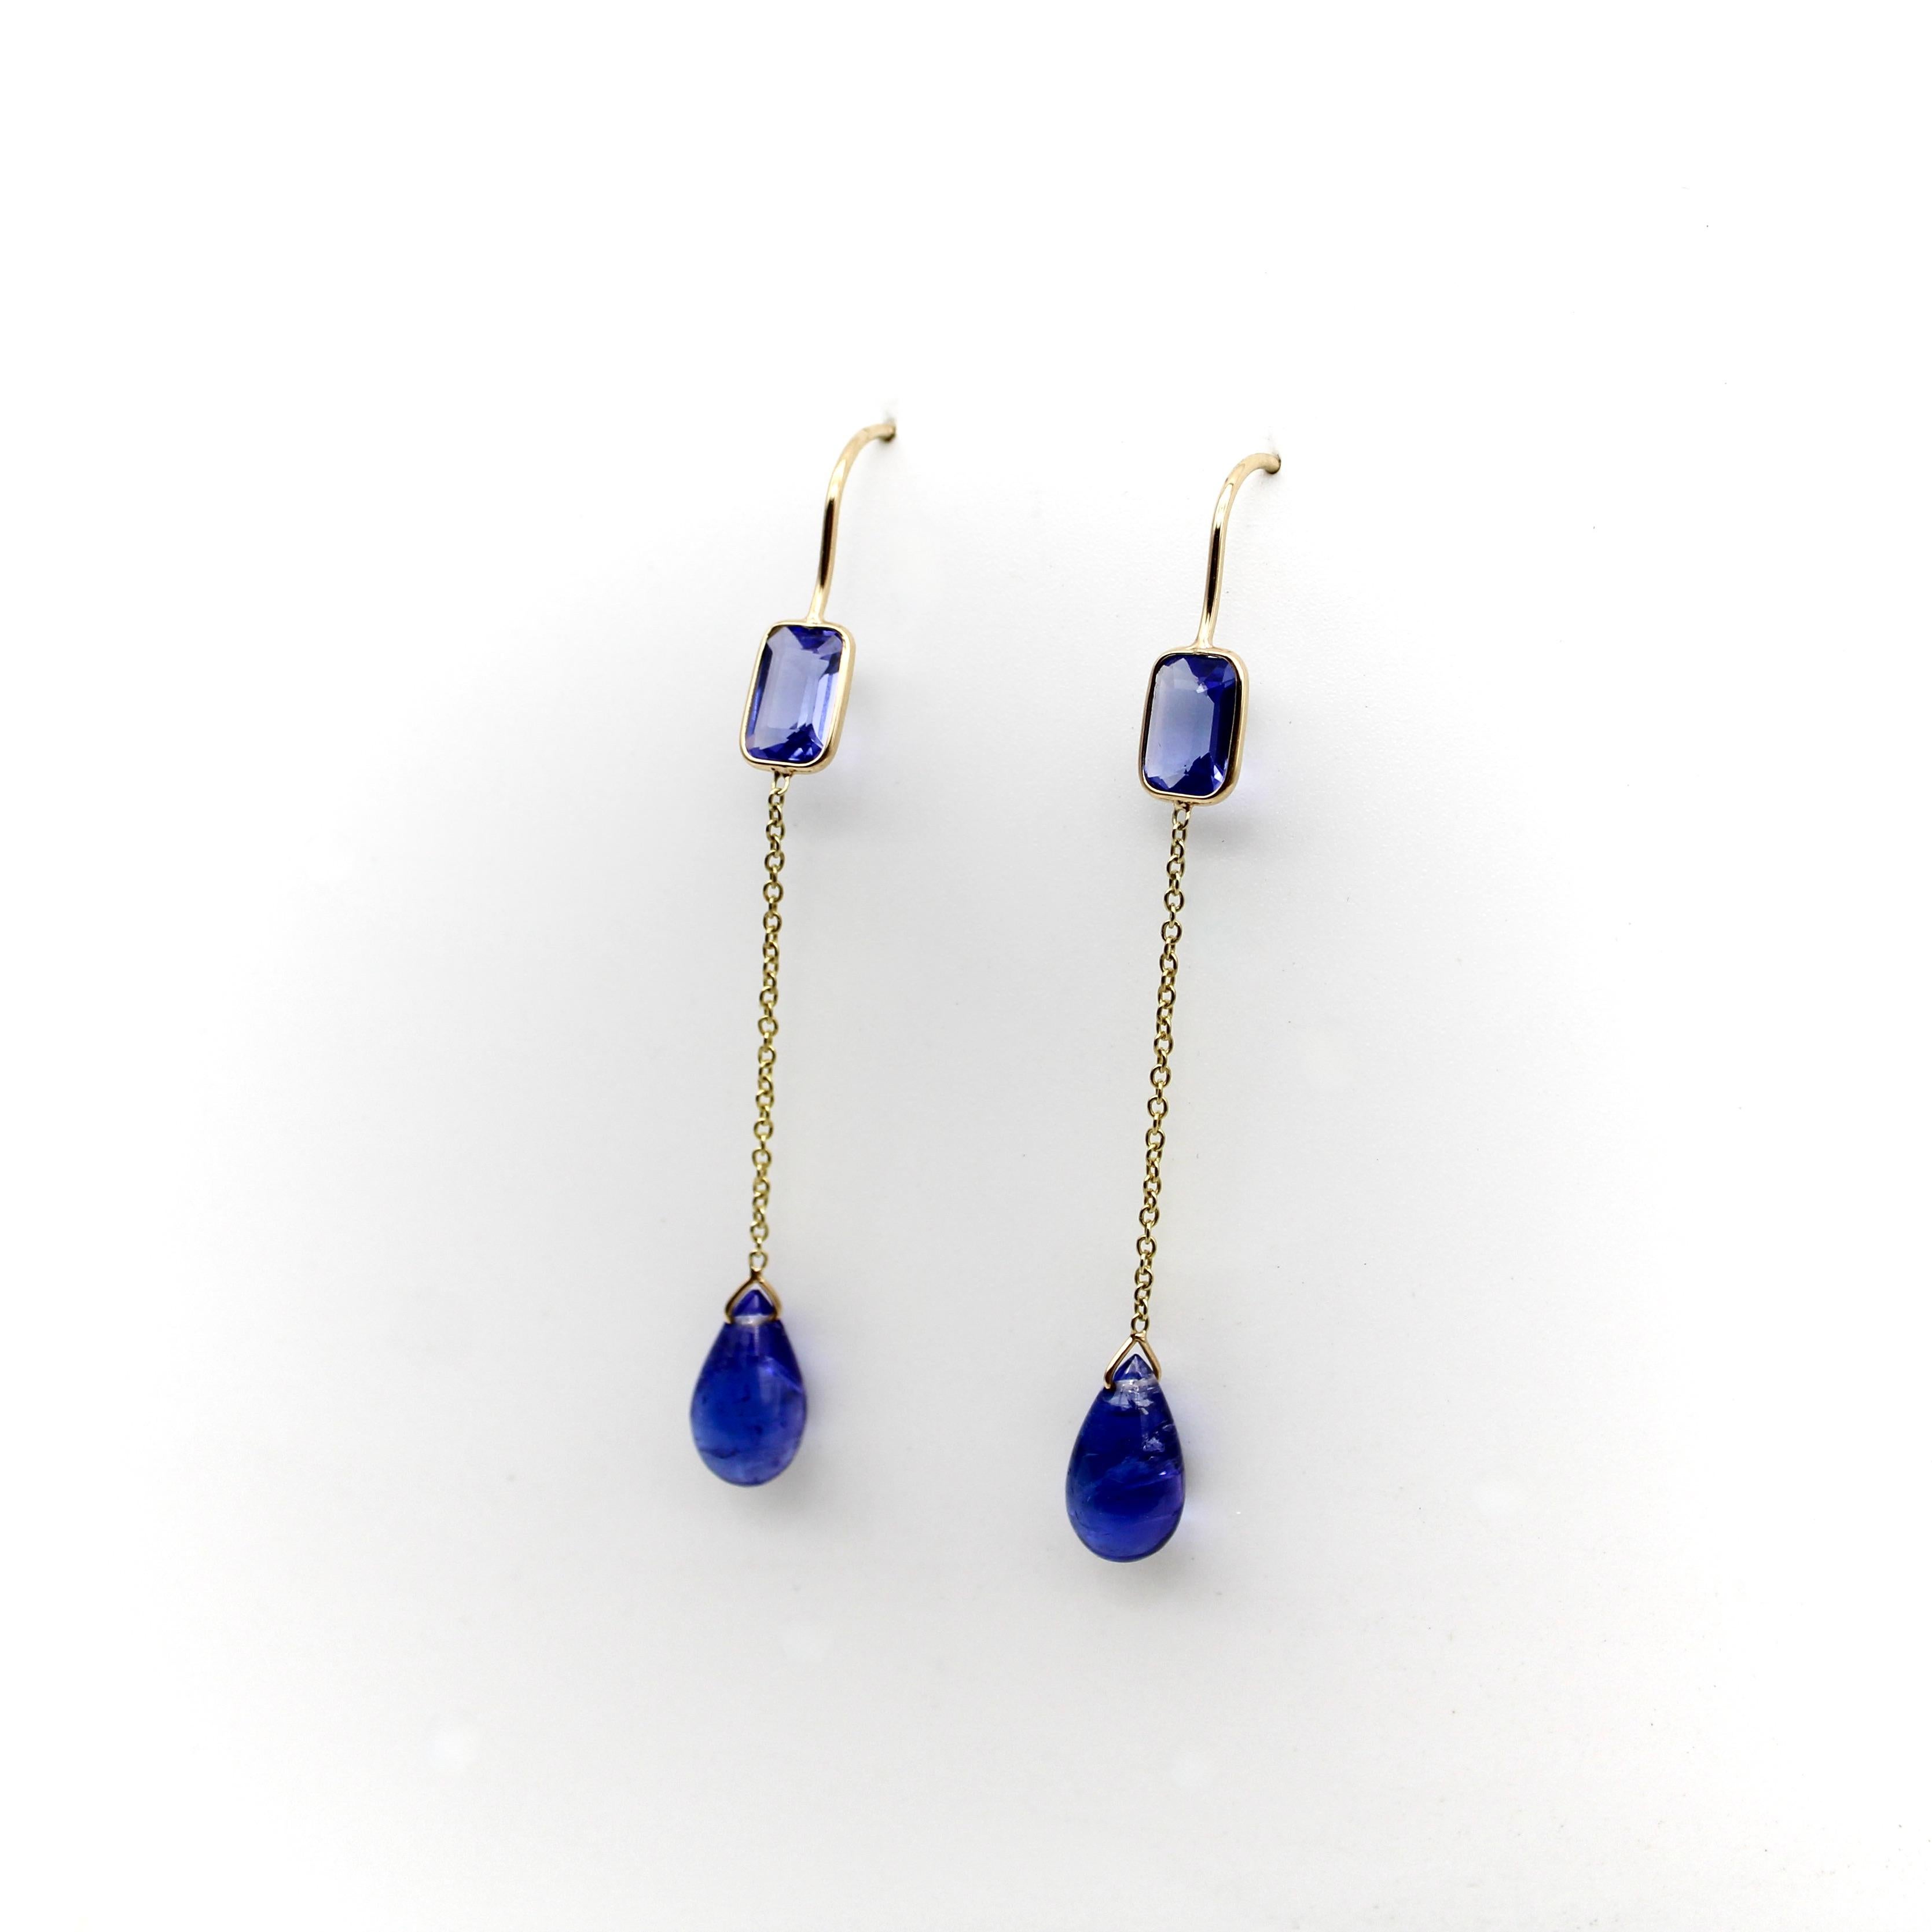 De superbes tanzanites bleues sont serties dans de l'or 18k, avec une pierre de taille émeraude au sommet et une pierre en forme de goutte d'eau qui pend d'une délicate chaîne en or. Les tanzanites sont d'un beau bleu avec des nuances violettes,